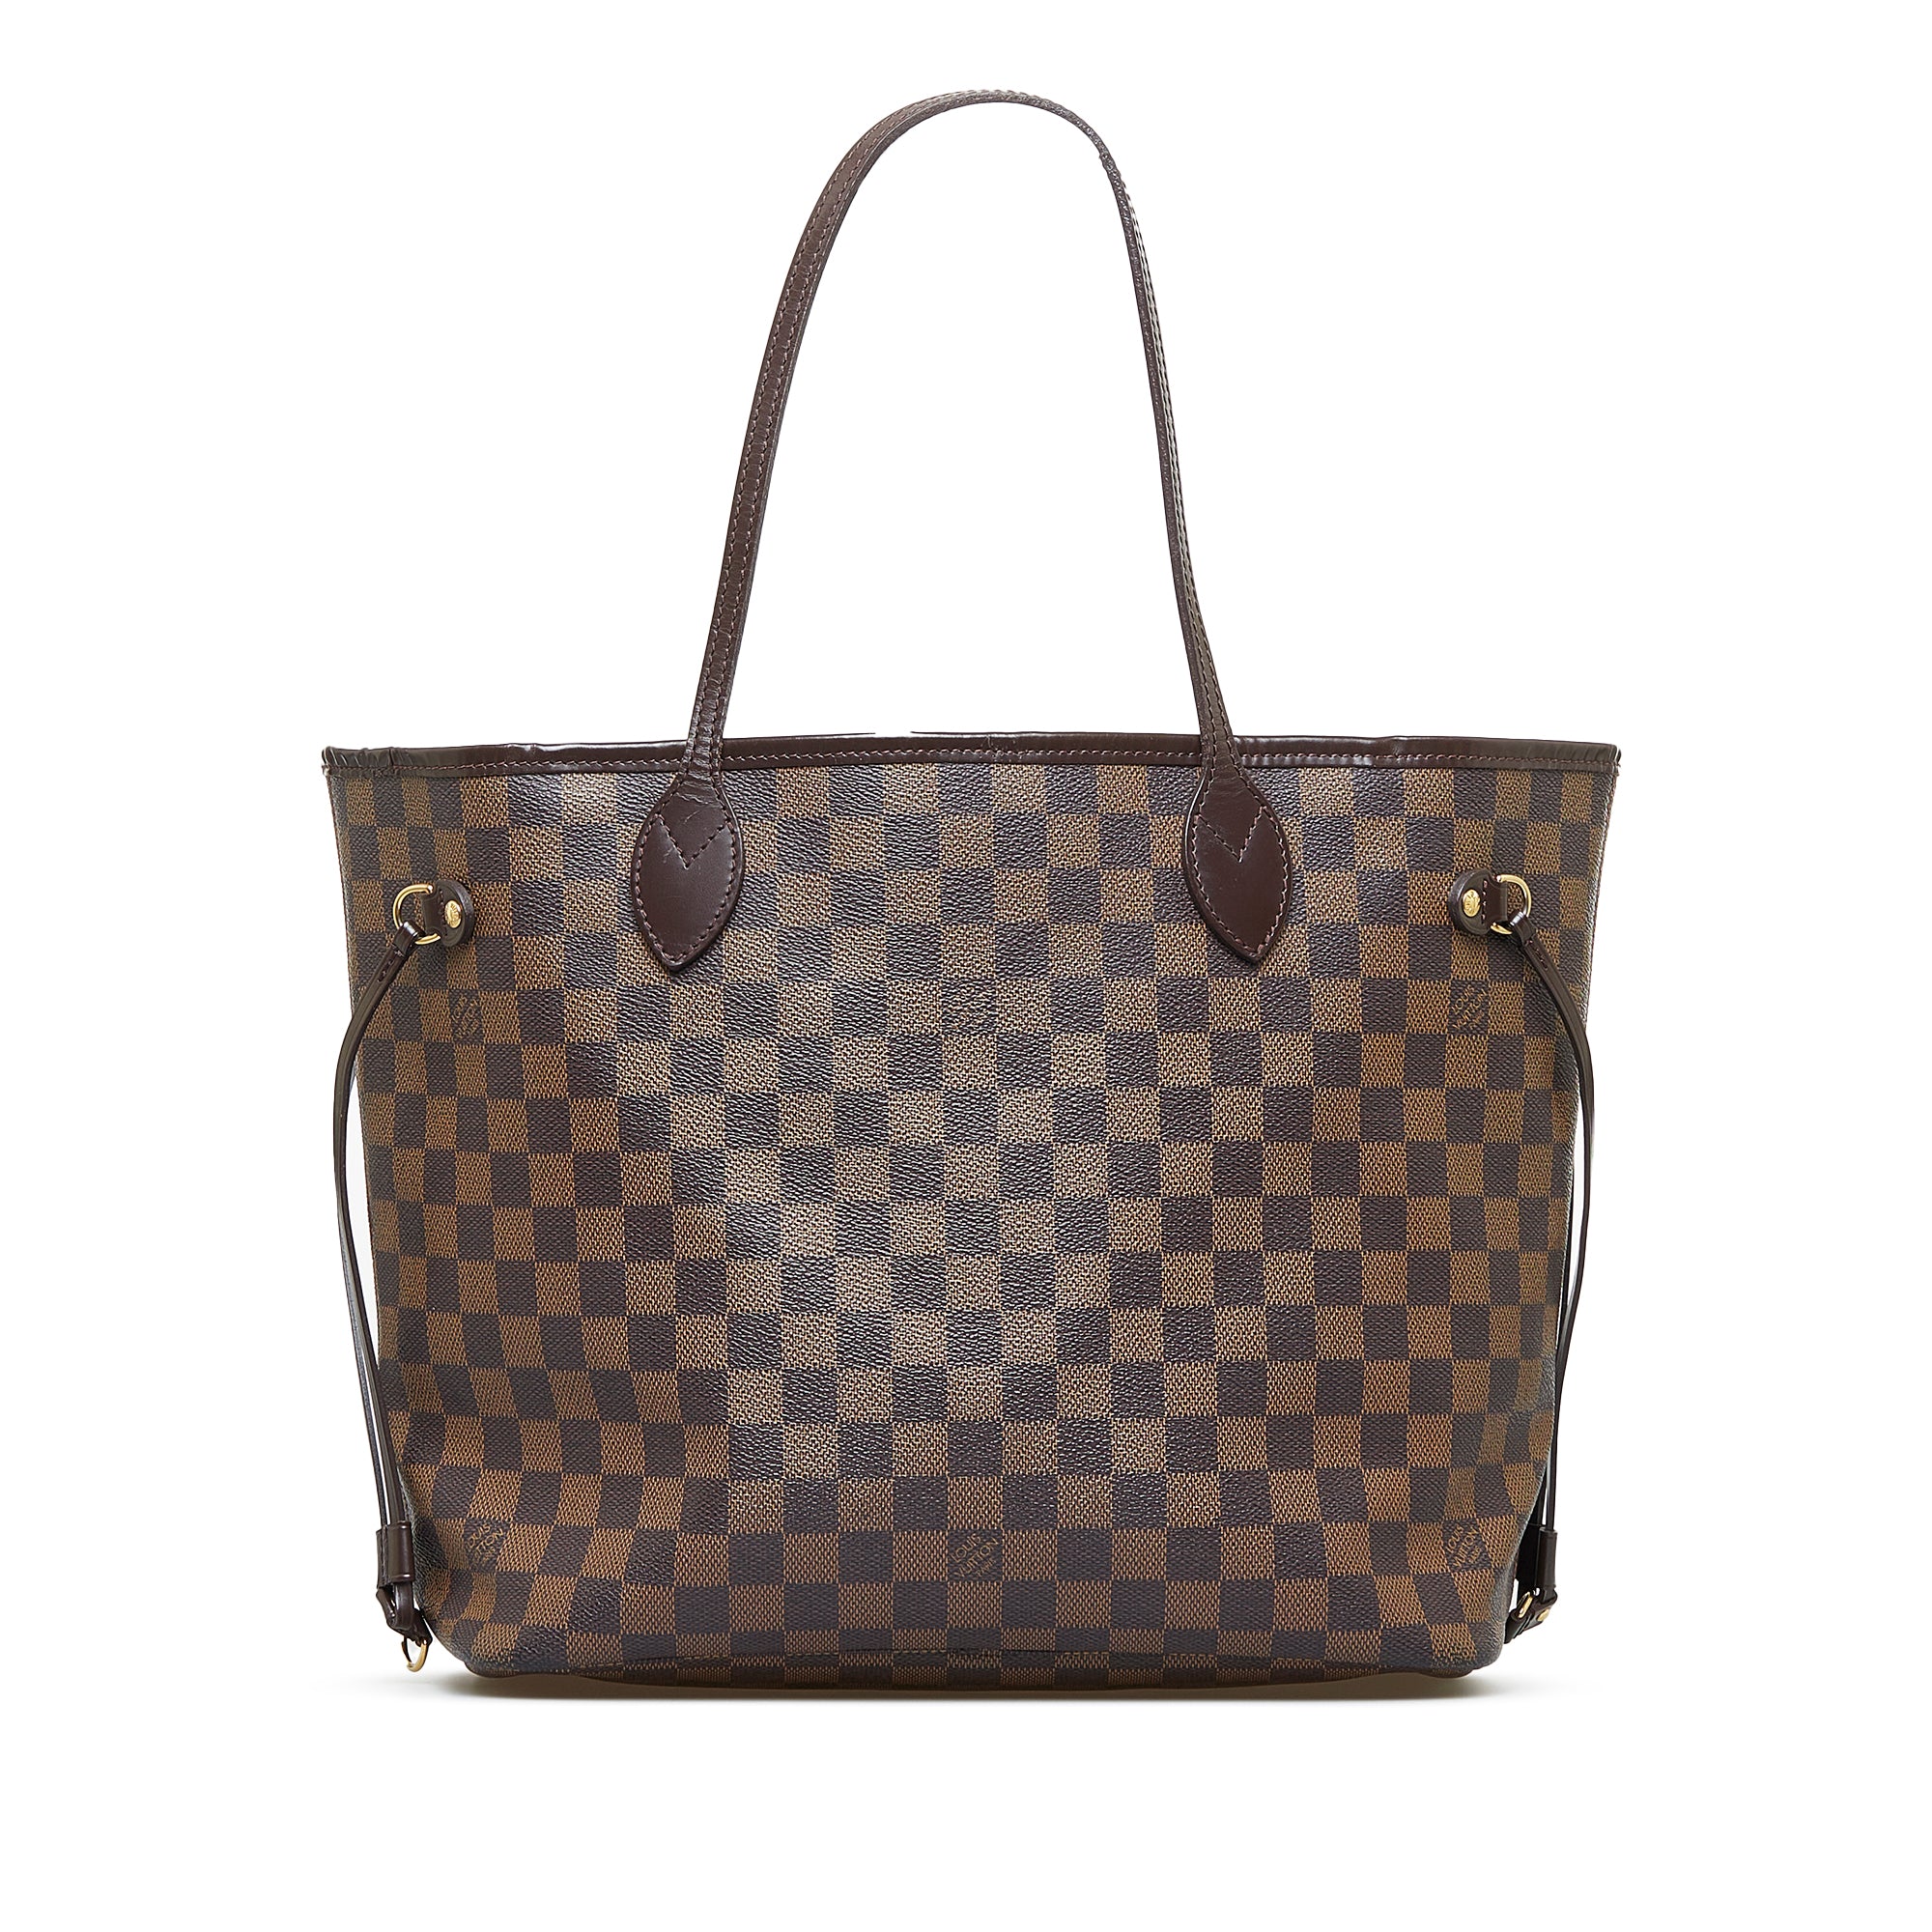 Louis Vuitton Belem MM Handbag in Damier Ebene - Pristine Condition